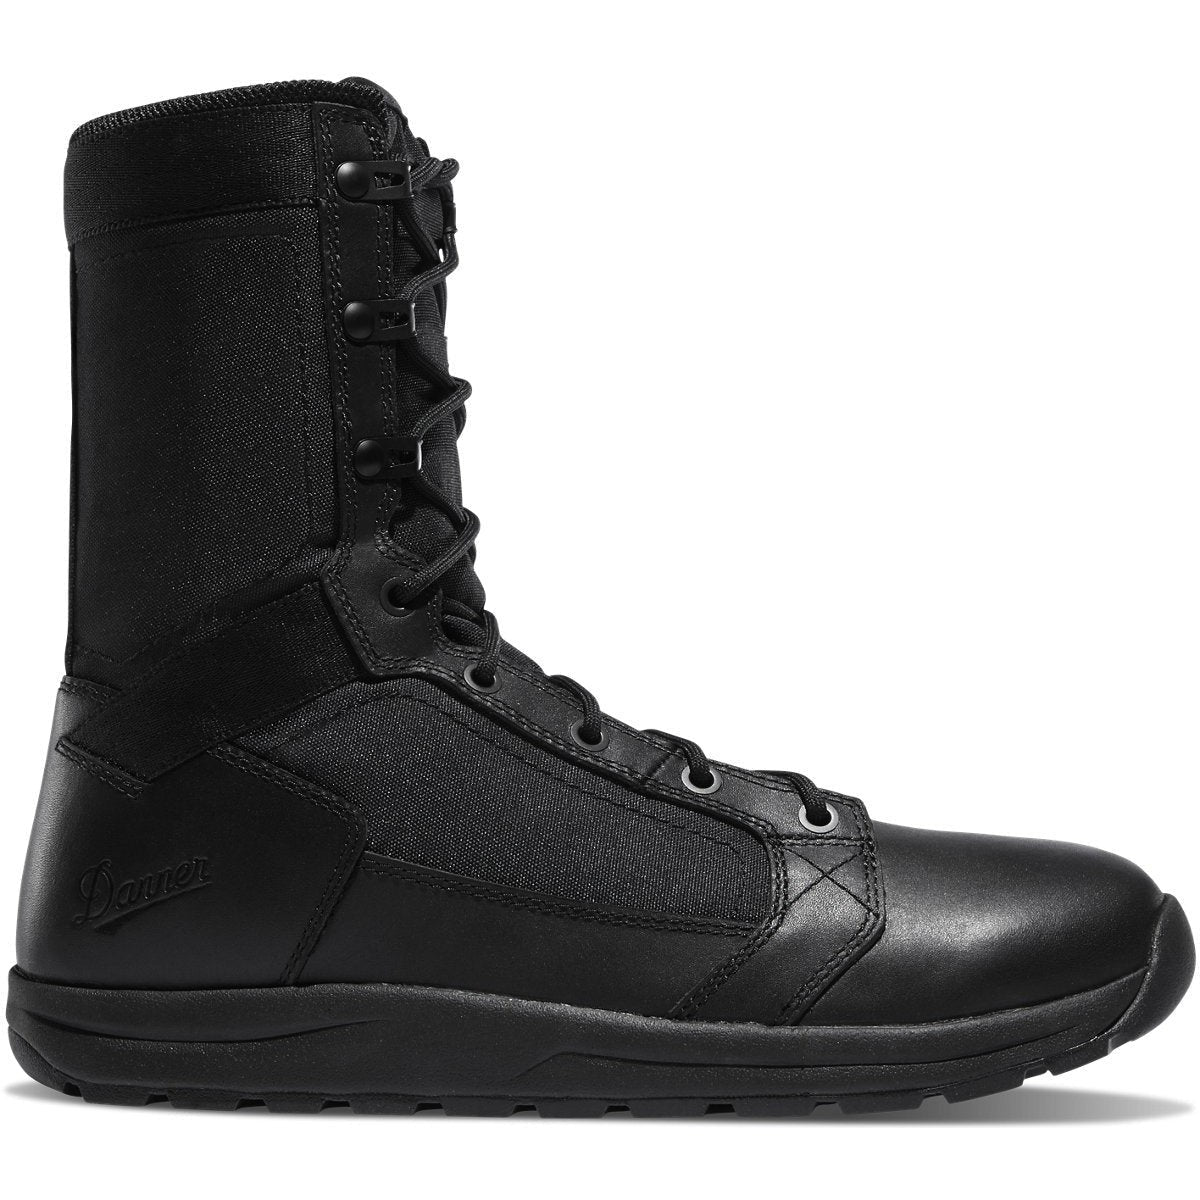 Danner Men's Tachyon 8" Duty Boot -Black- 50124 8 / Medium / Black - Overlook Boots